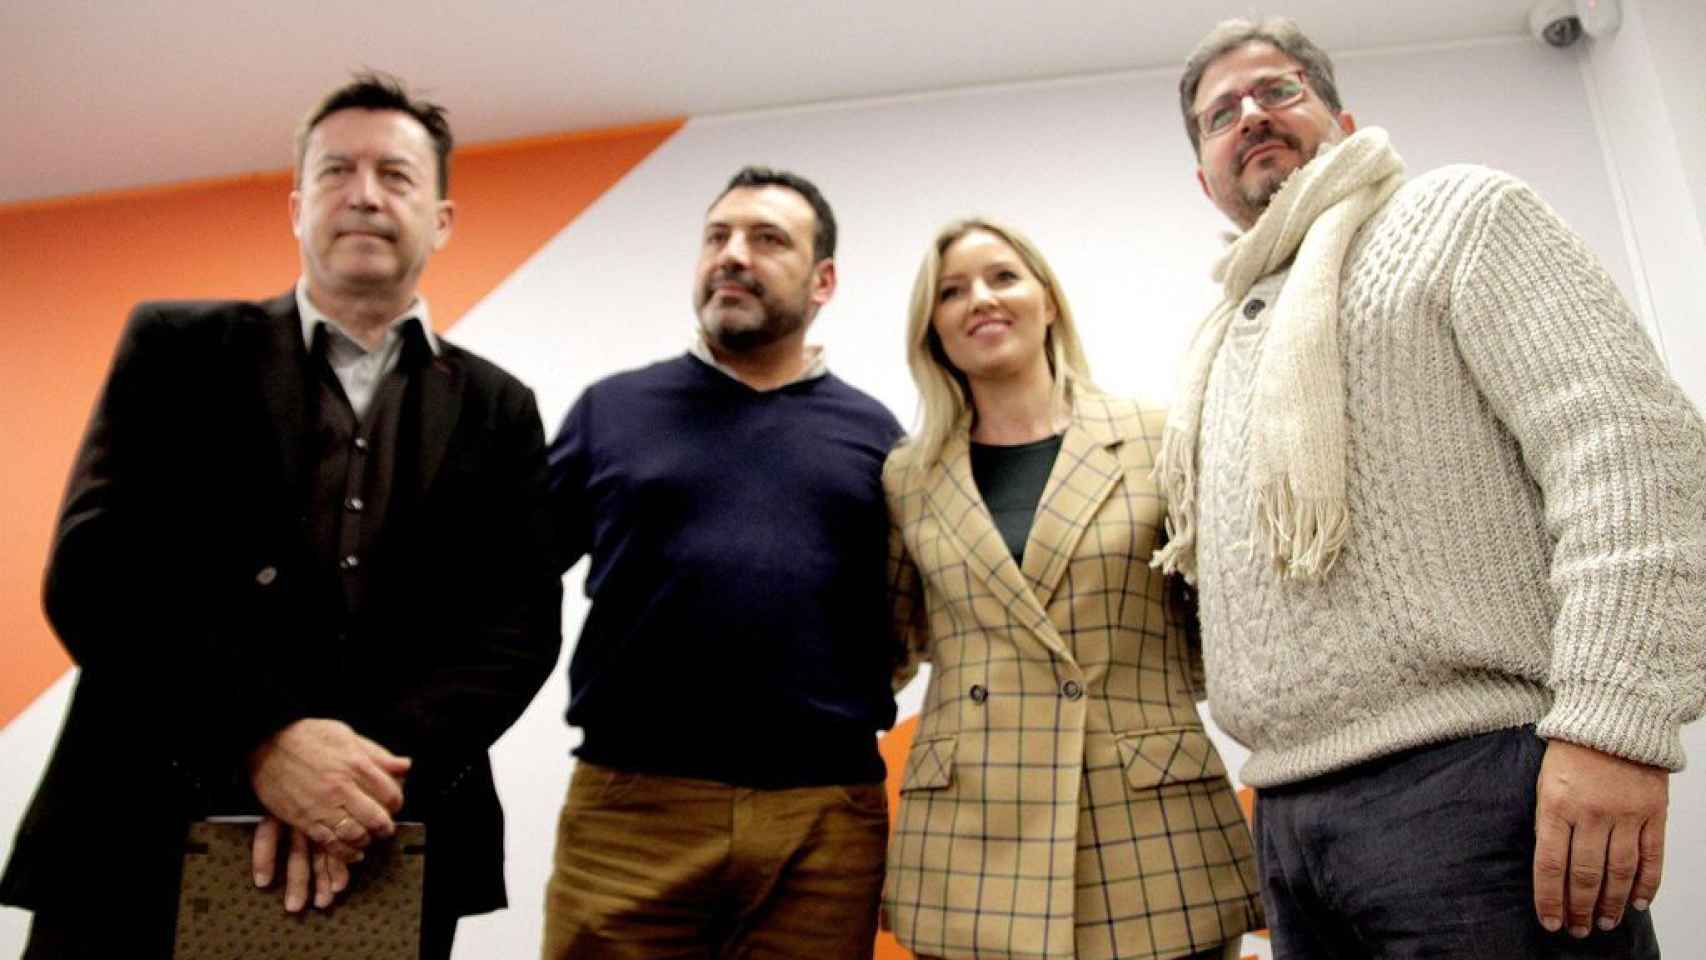 Jerónimo Moya y Ana Martínez Vidal, ambos cargos electos de Ciudadanos (c), mantienen una relación sentimental desde hace más de año y medio.